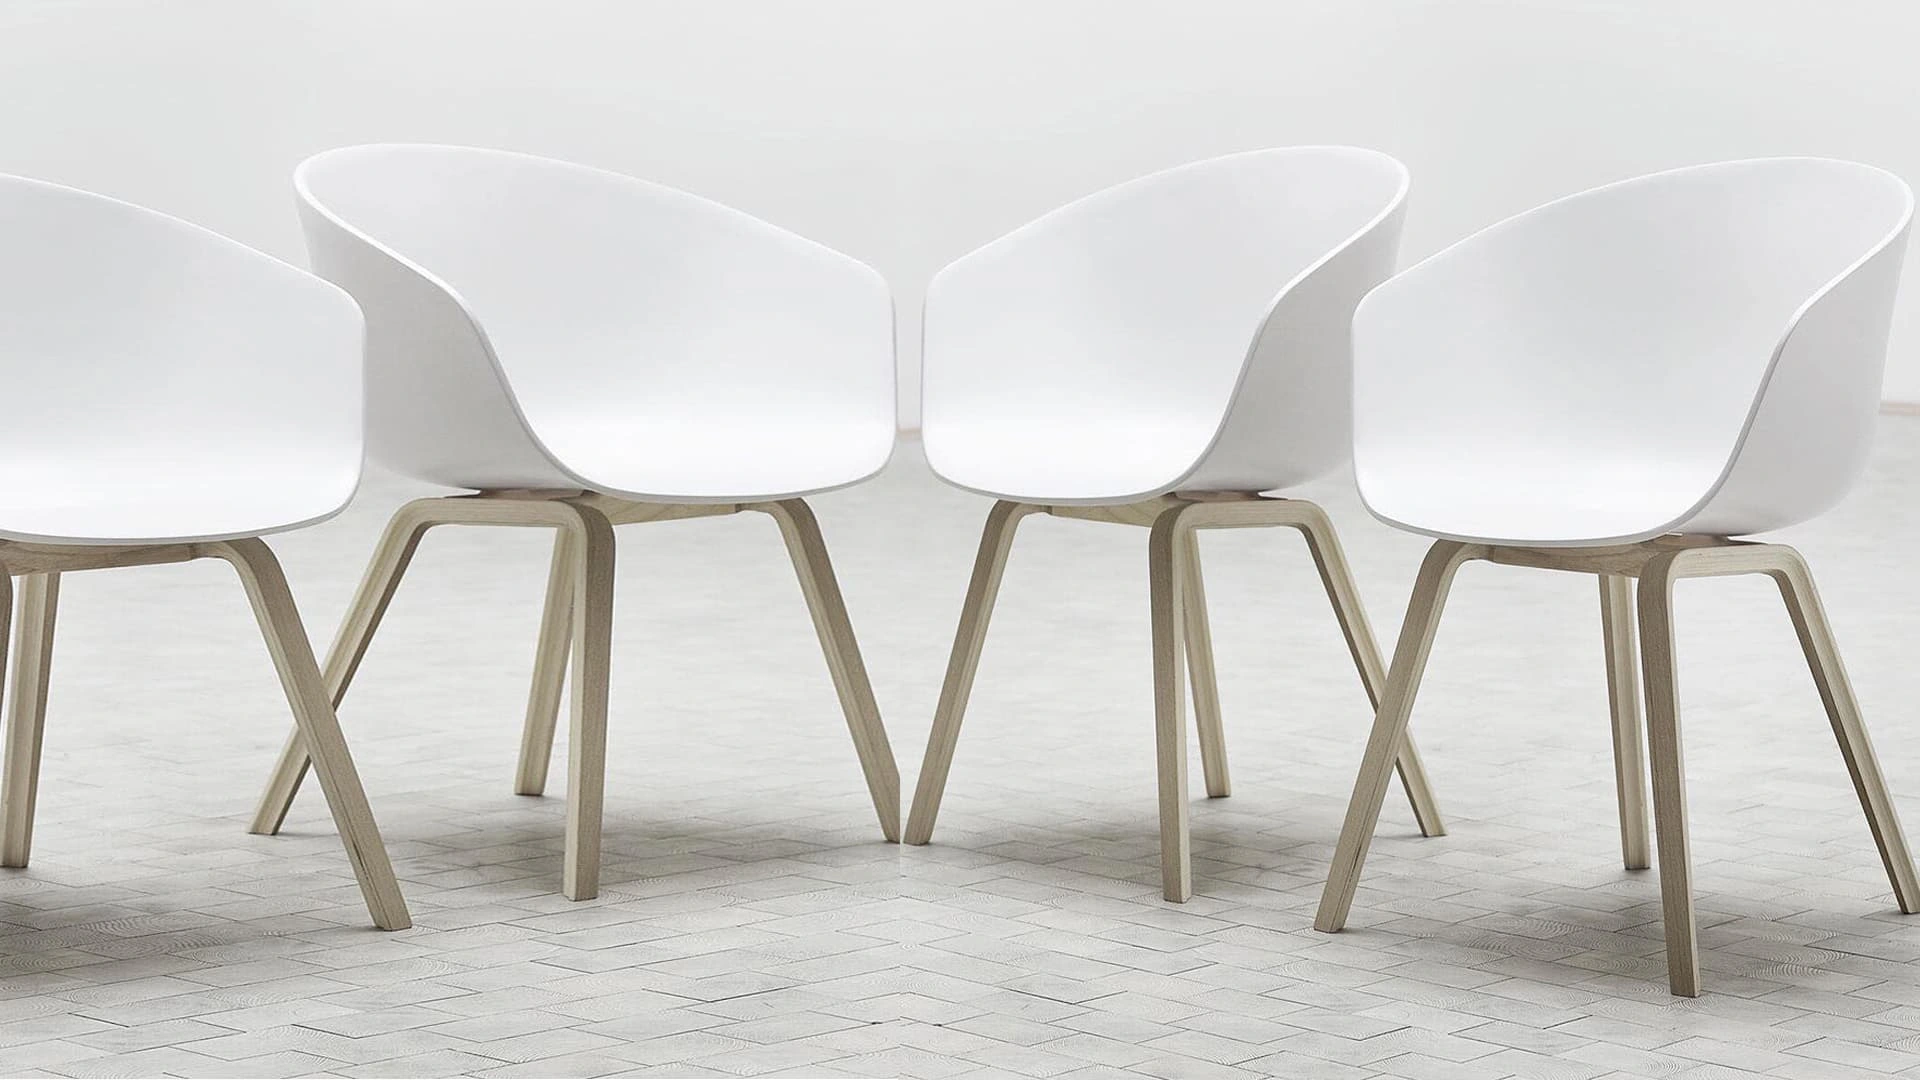 Ghế nhựa cho văn phòng bằng gỗ có lợi thế về diện mạo và có giá thành cao hơn